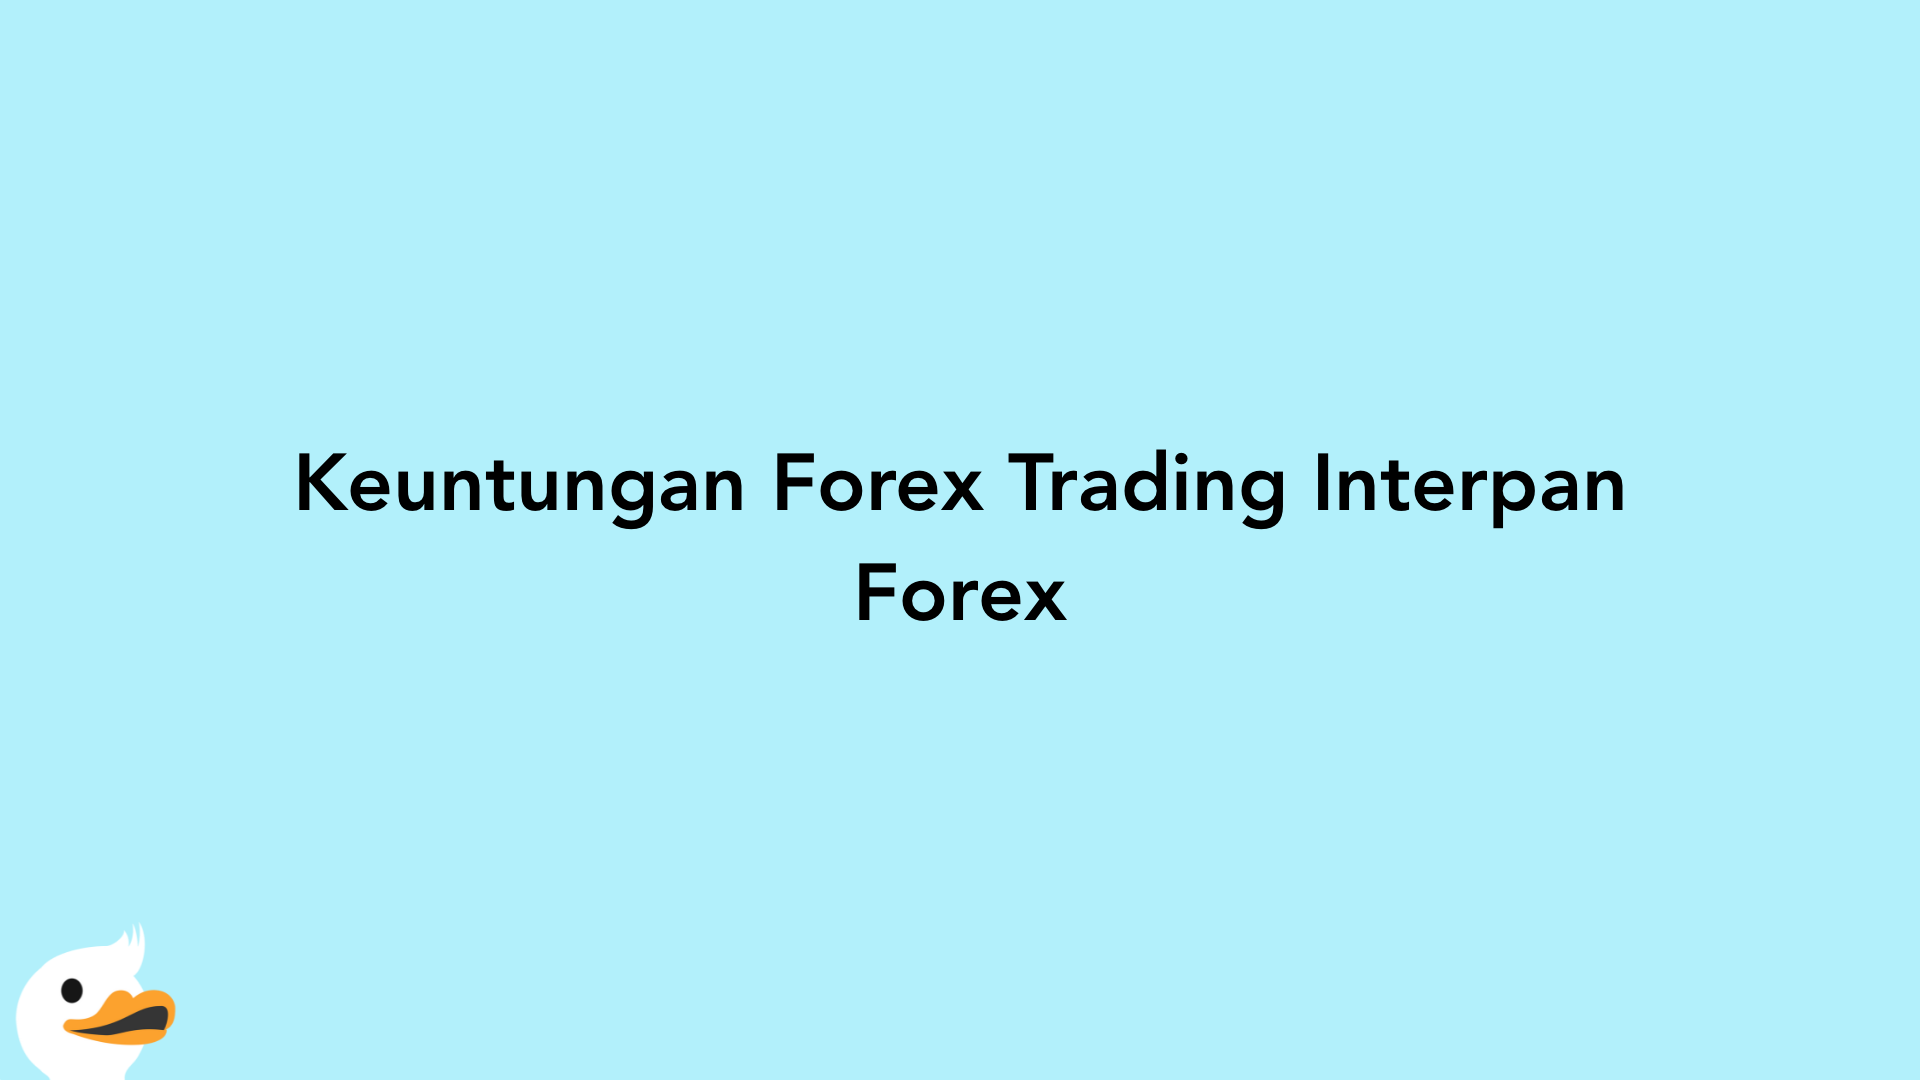 Keuntungan Forex Trading Interpan Forex